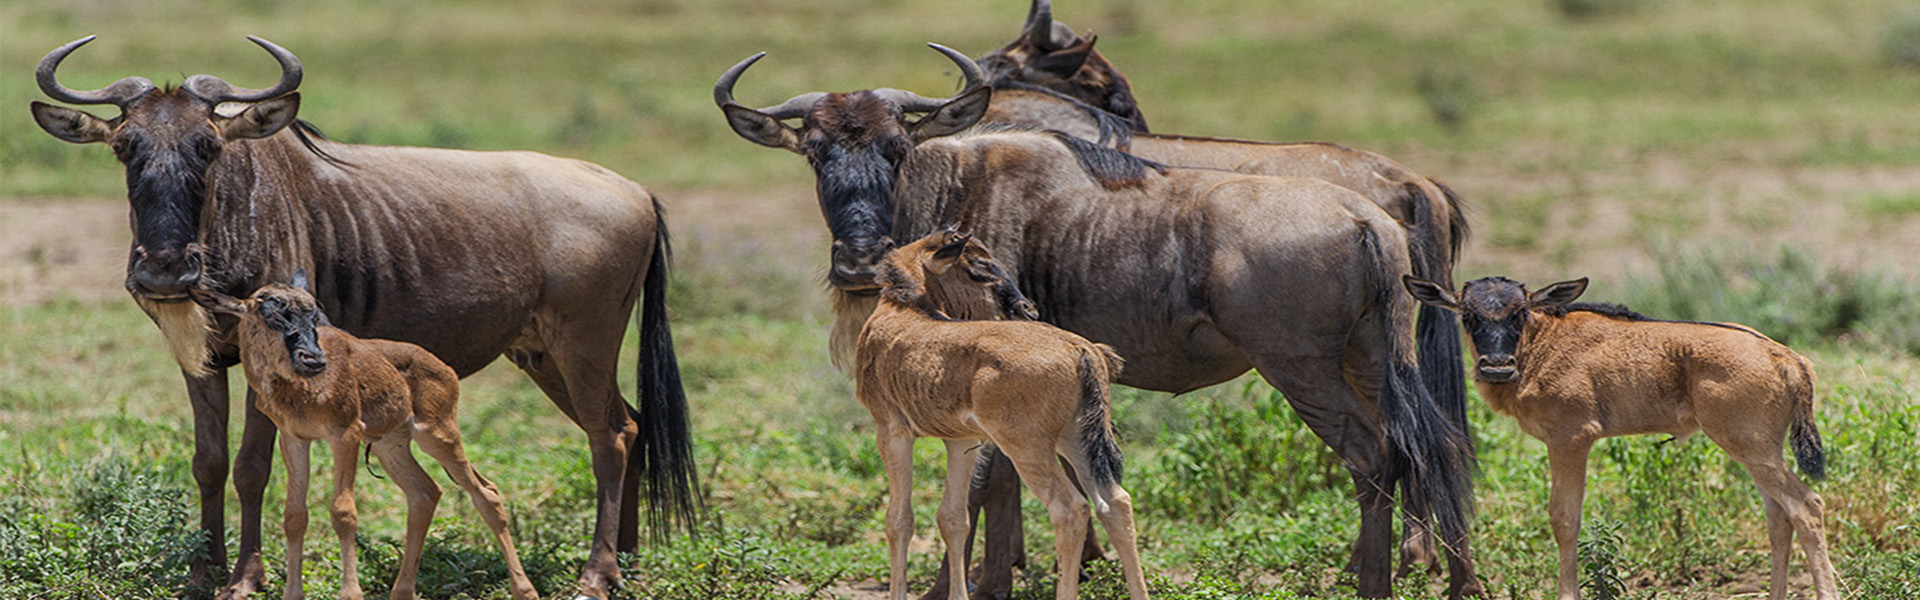 Wildebeest Calving Season, Ndutu Serengeti